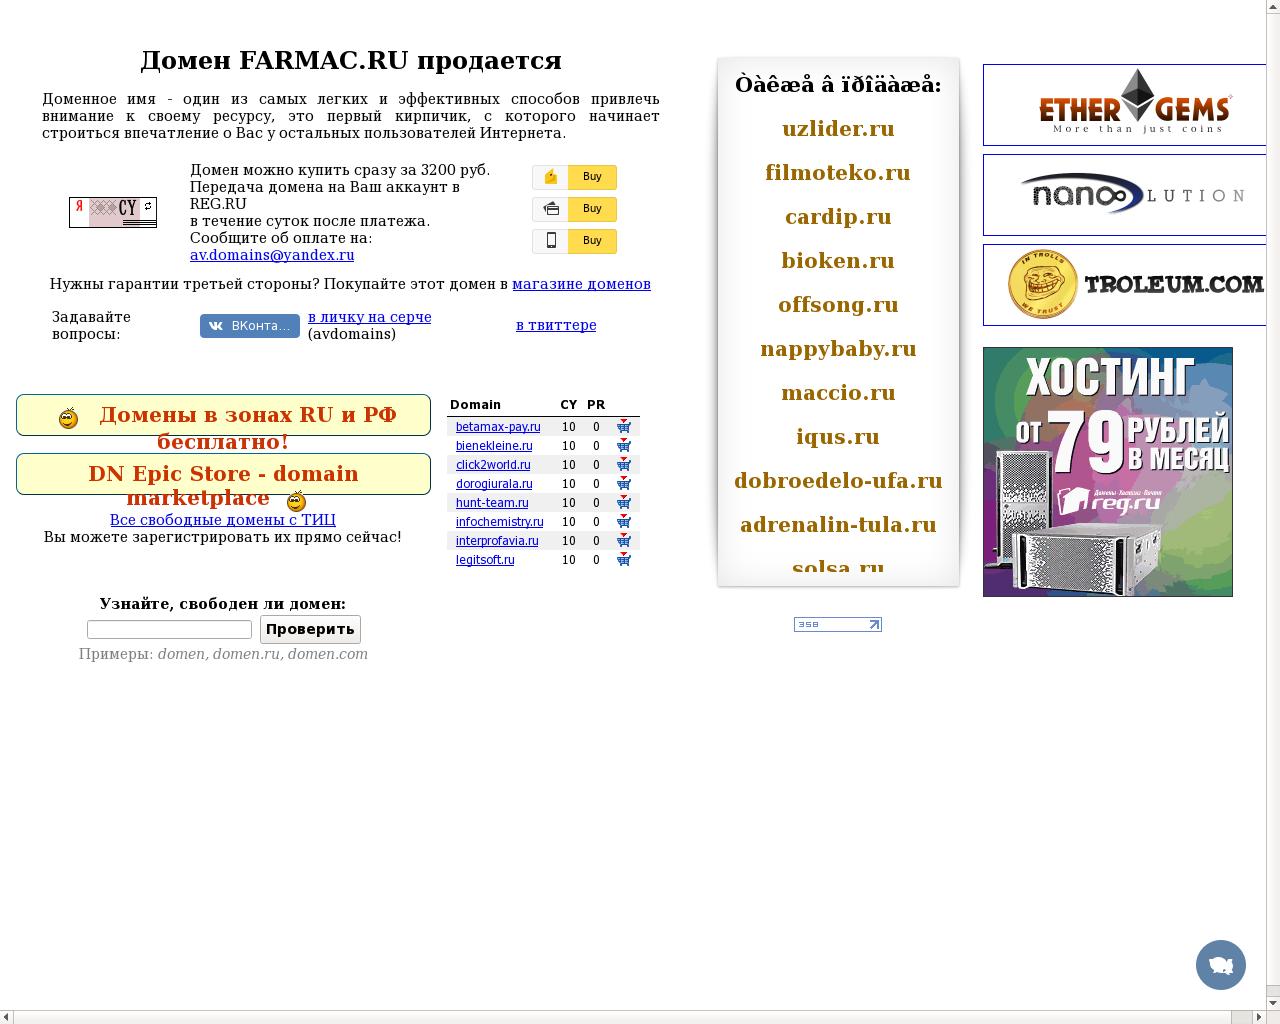 Изображение сайта farmac.ru в разрешении 1280x1024